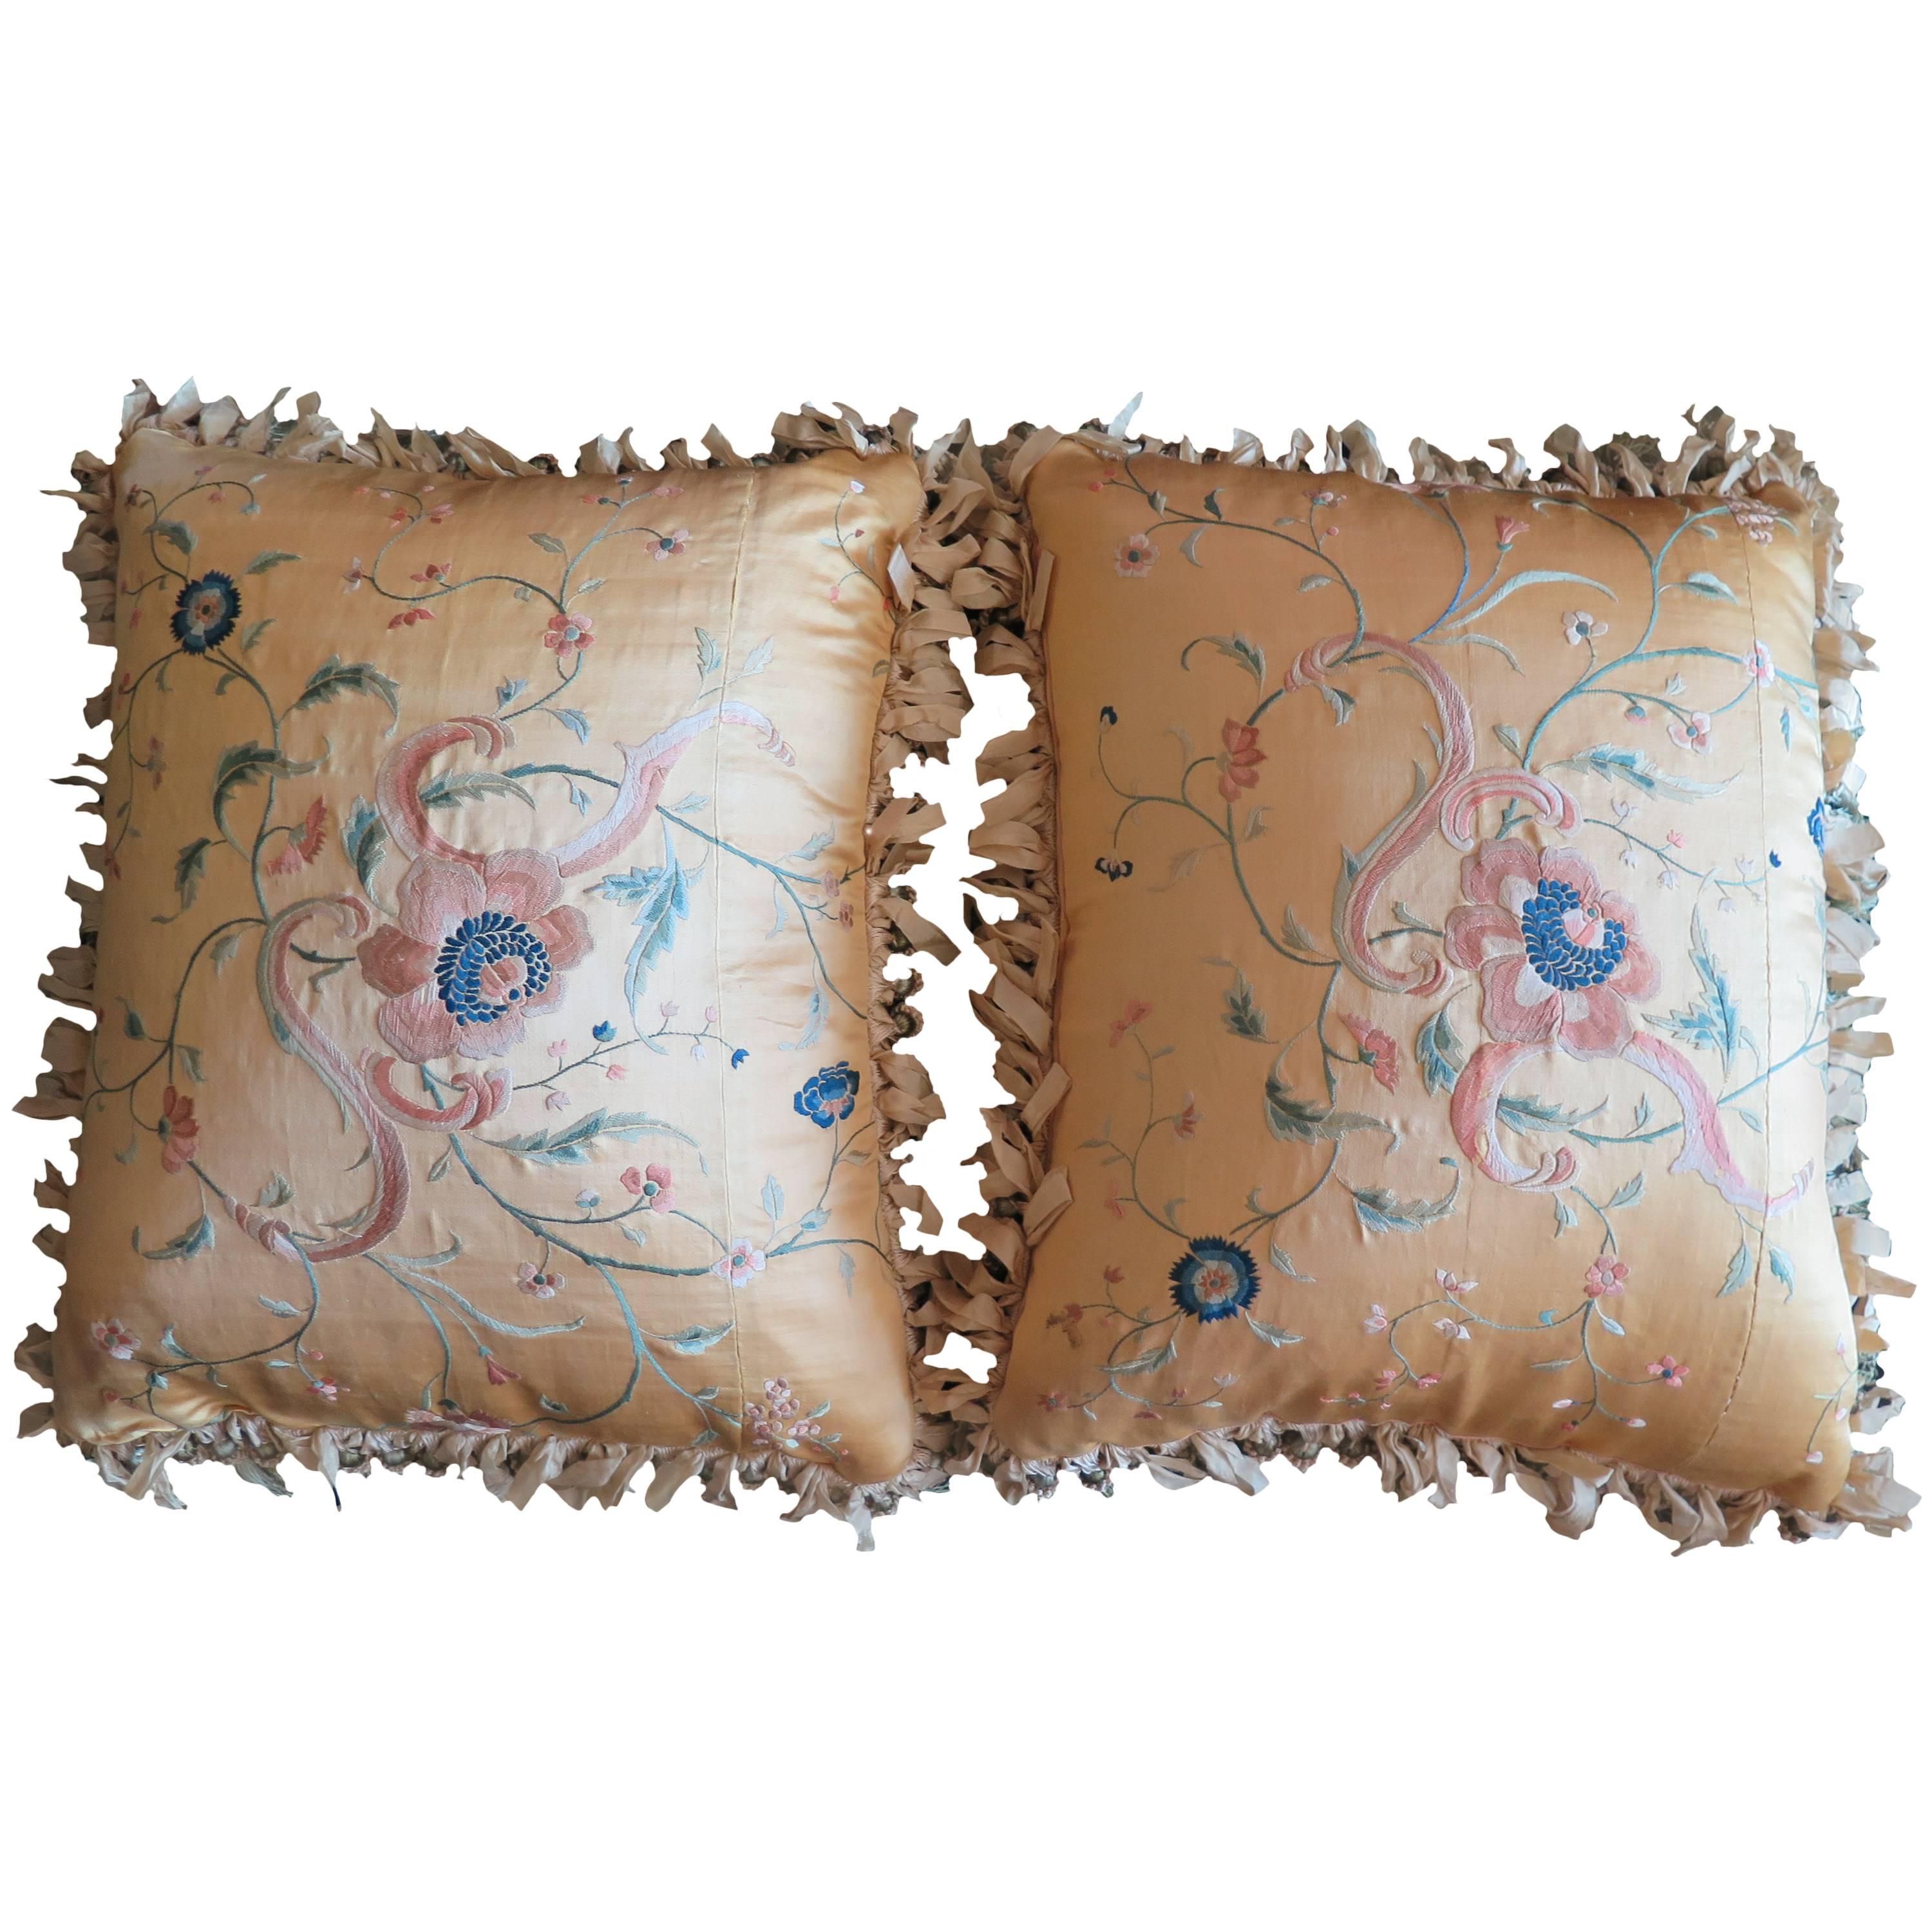 Exquisite Pair of Decorative Pillows